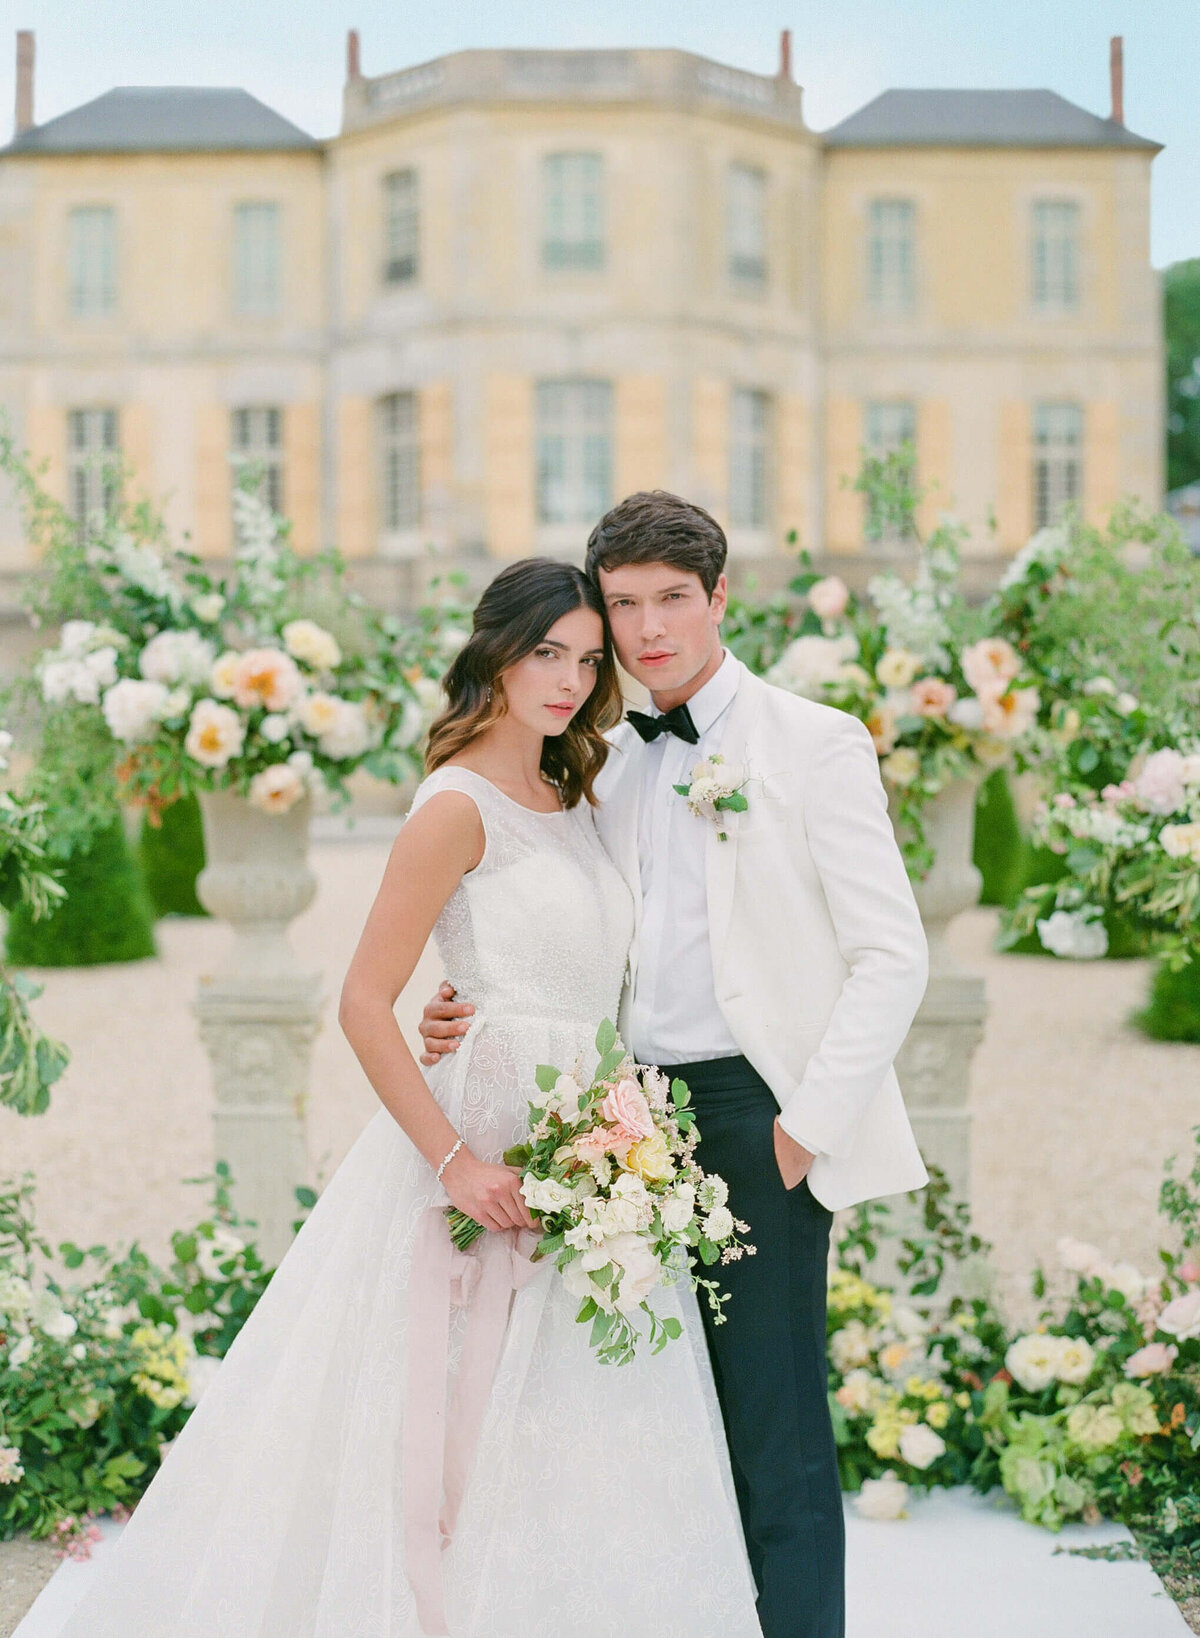 Chateau-de-Villette-wedding-florist-Floraison23